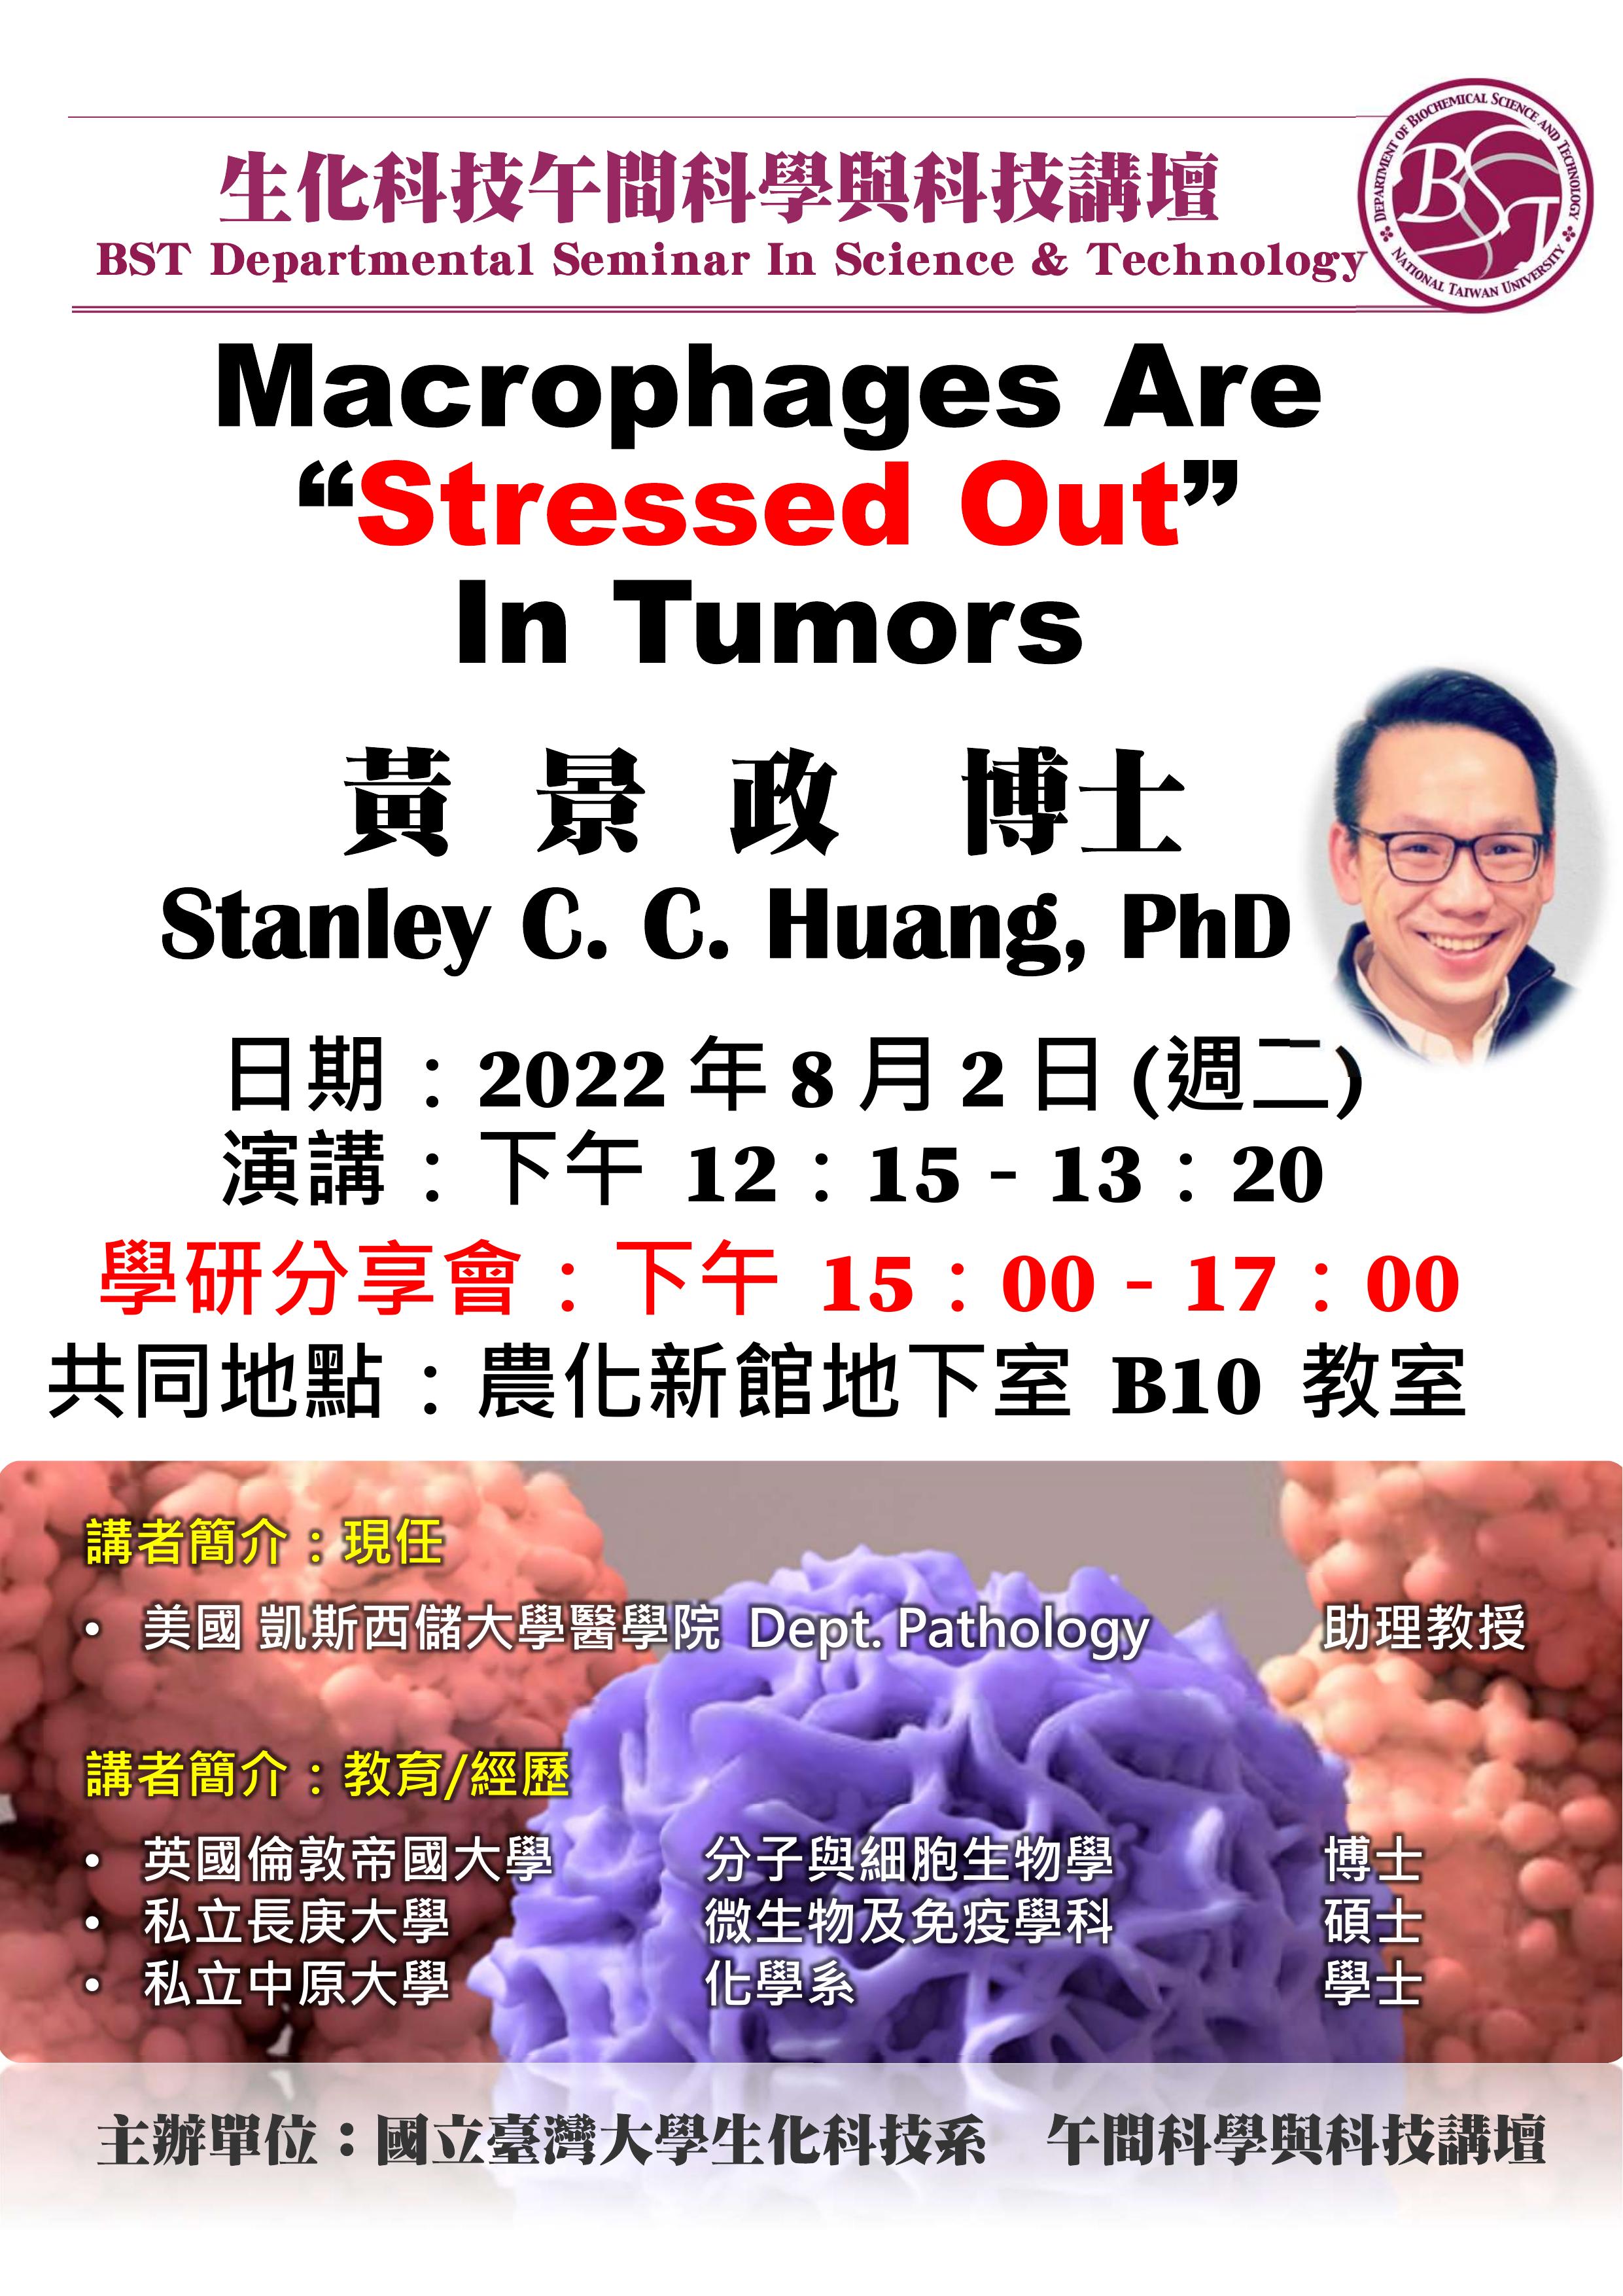 午間科學與科技講壇 黃景政 -「Macrophages Are “Stressed Out” In Tumors」